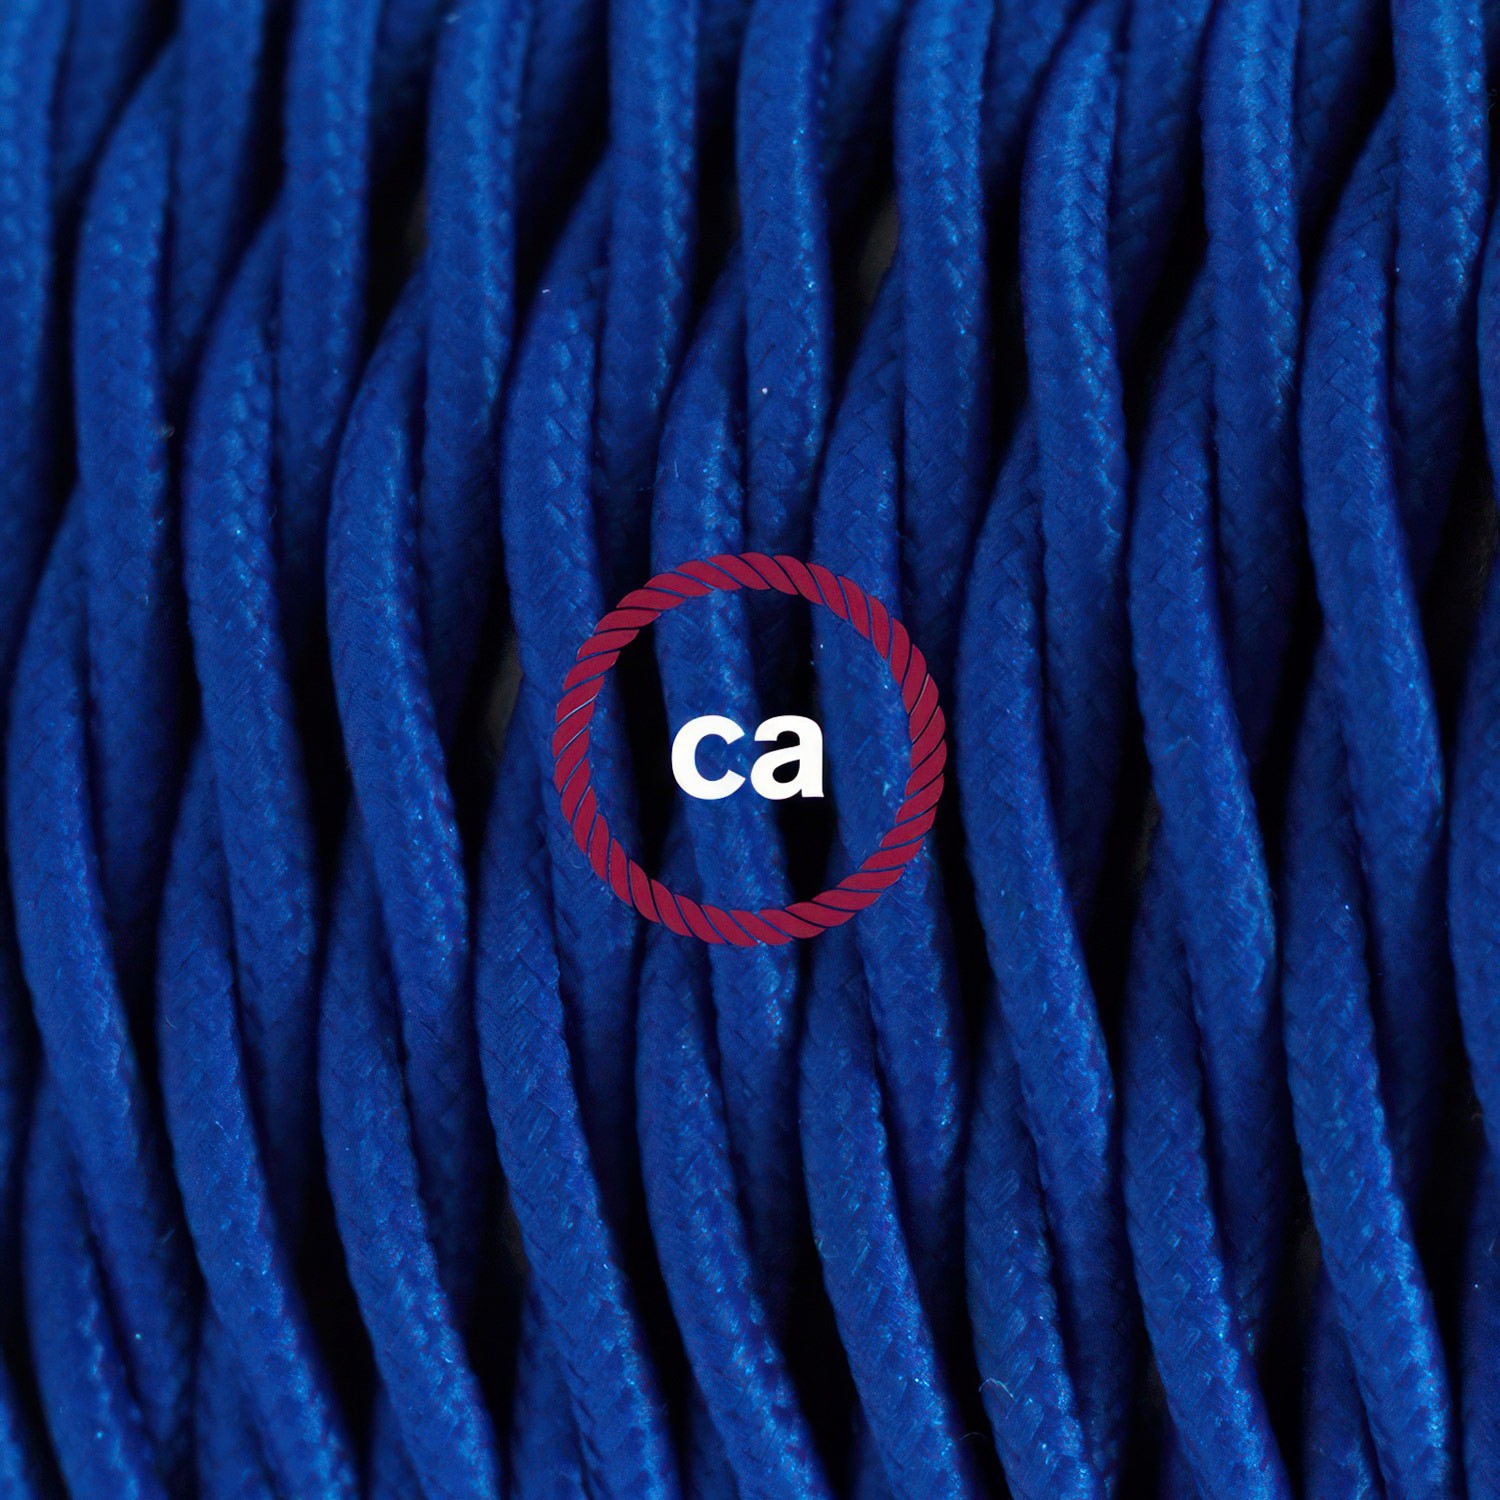 Cableado para lámpara, cable TM12 Efecto Seda Azul 1,8m. Elige tu el color de la clavija y del interruptor!